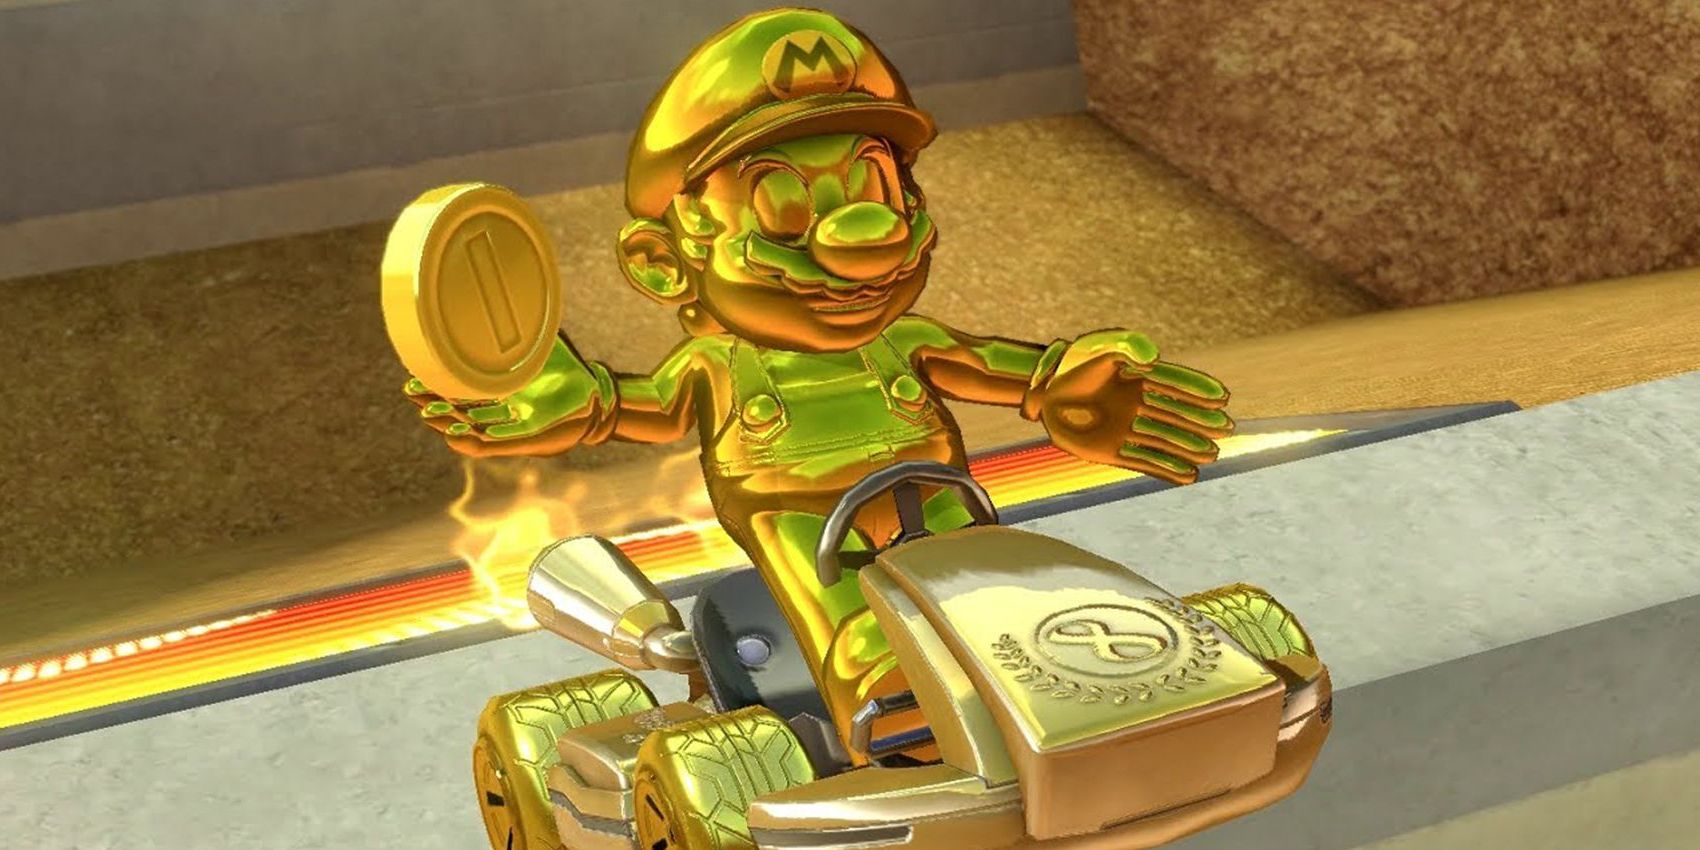 Gold Mario with a Coin